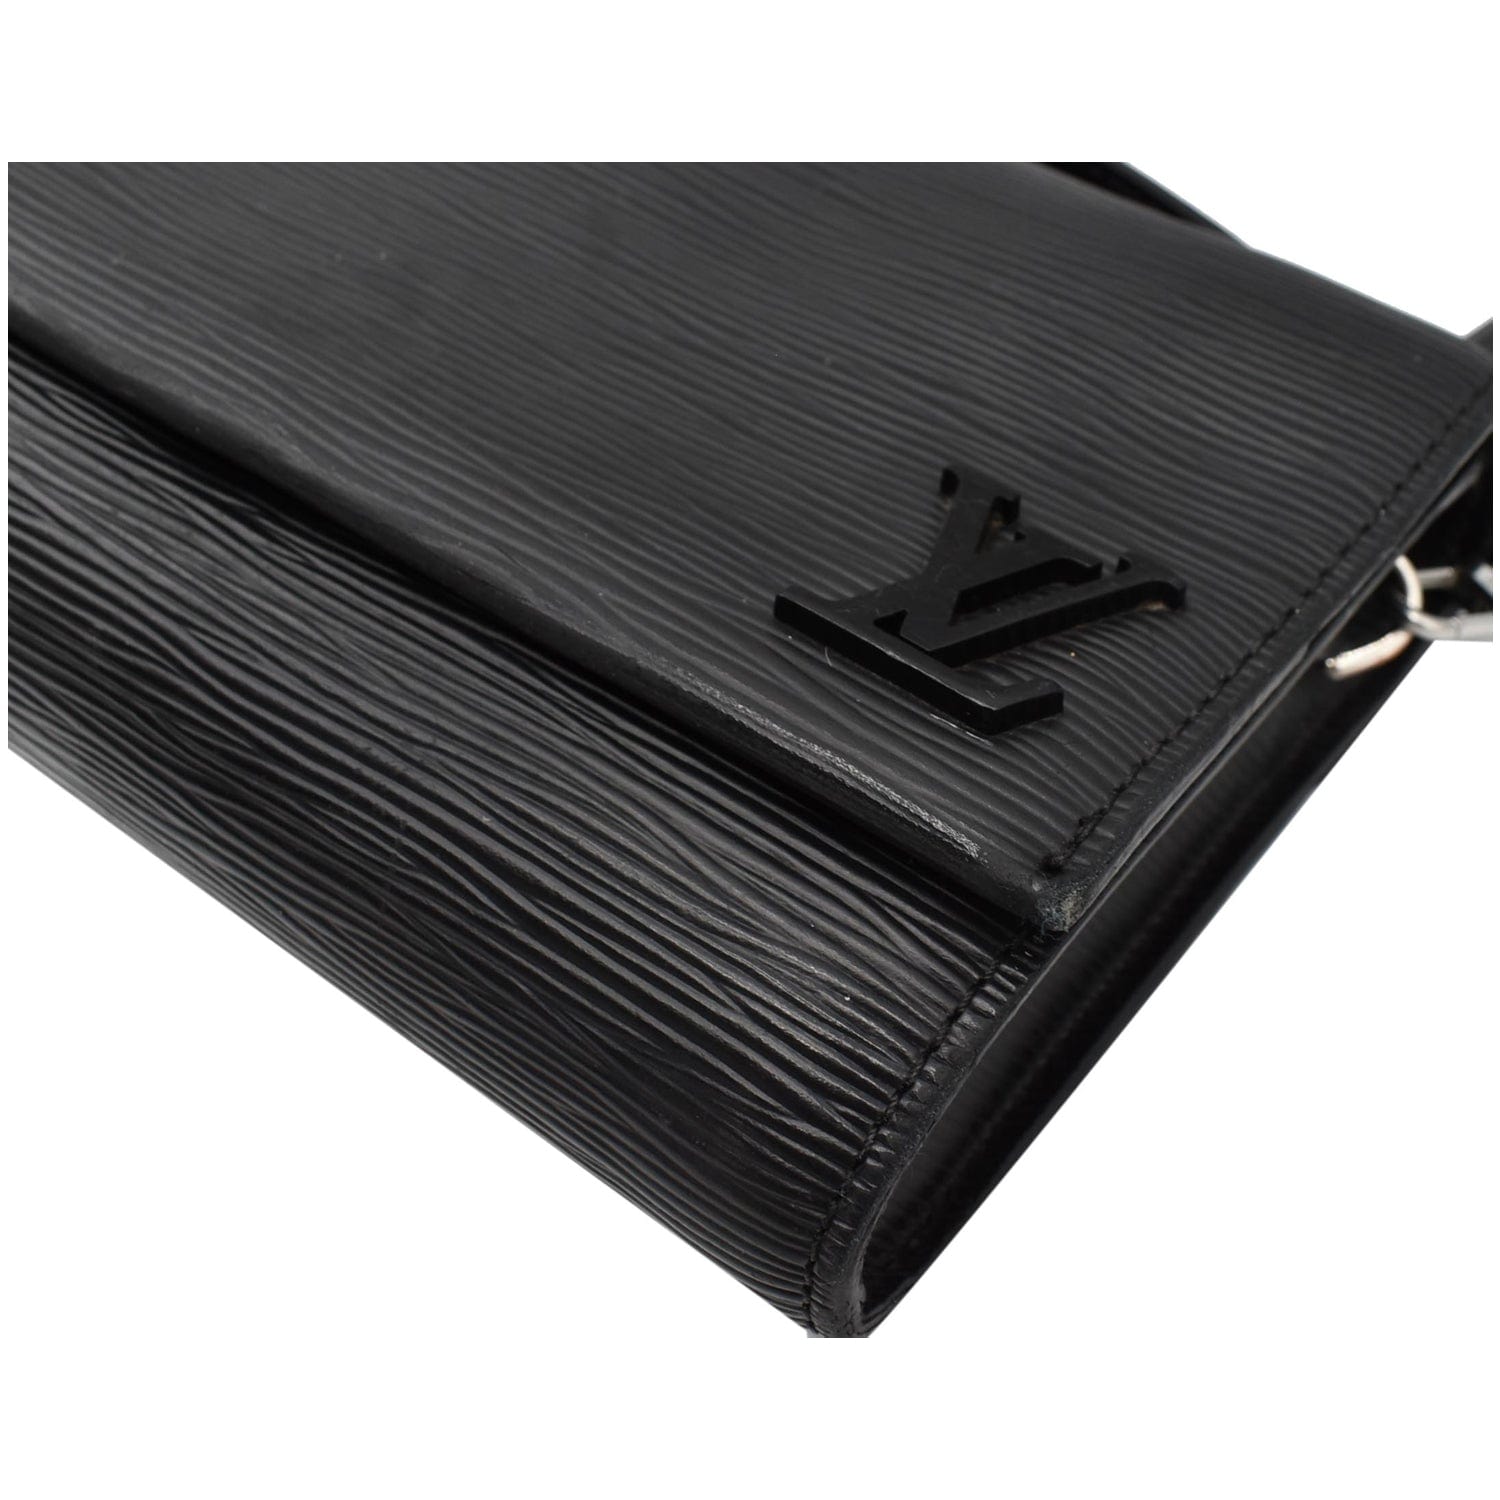 Louis Vuitton Dune Epi Leather Clery Pochette Bag Louis Vuitton | The  Luxury Closet